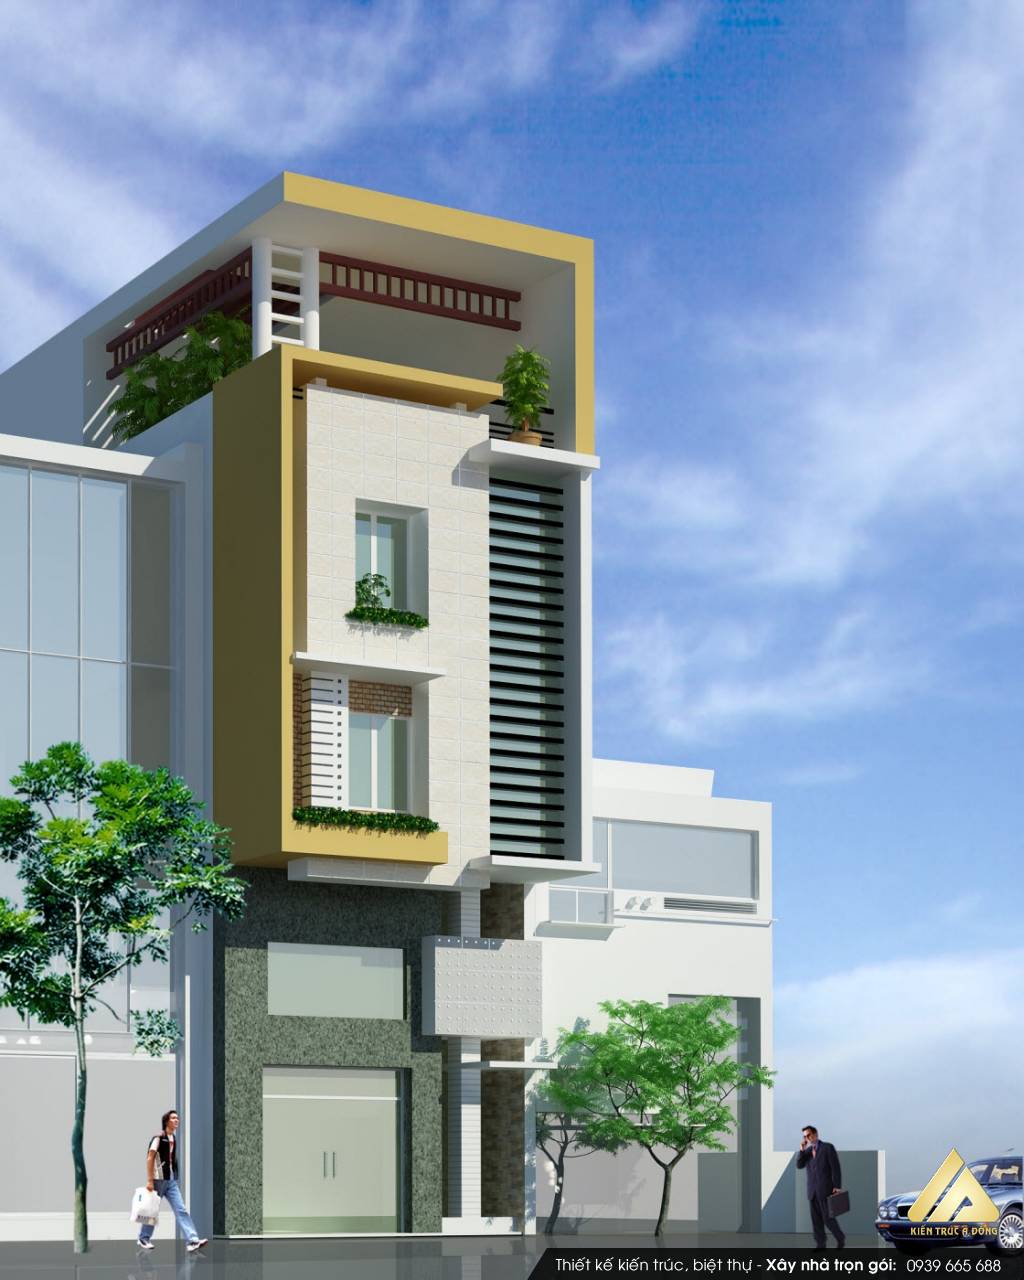 Tuyển chọn các mẫu nhà phố hiện đại đẹp bậc nhất Việt Nam > Thiết kế nhà phố 3 tầng hiện đại, sang trọng